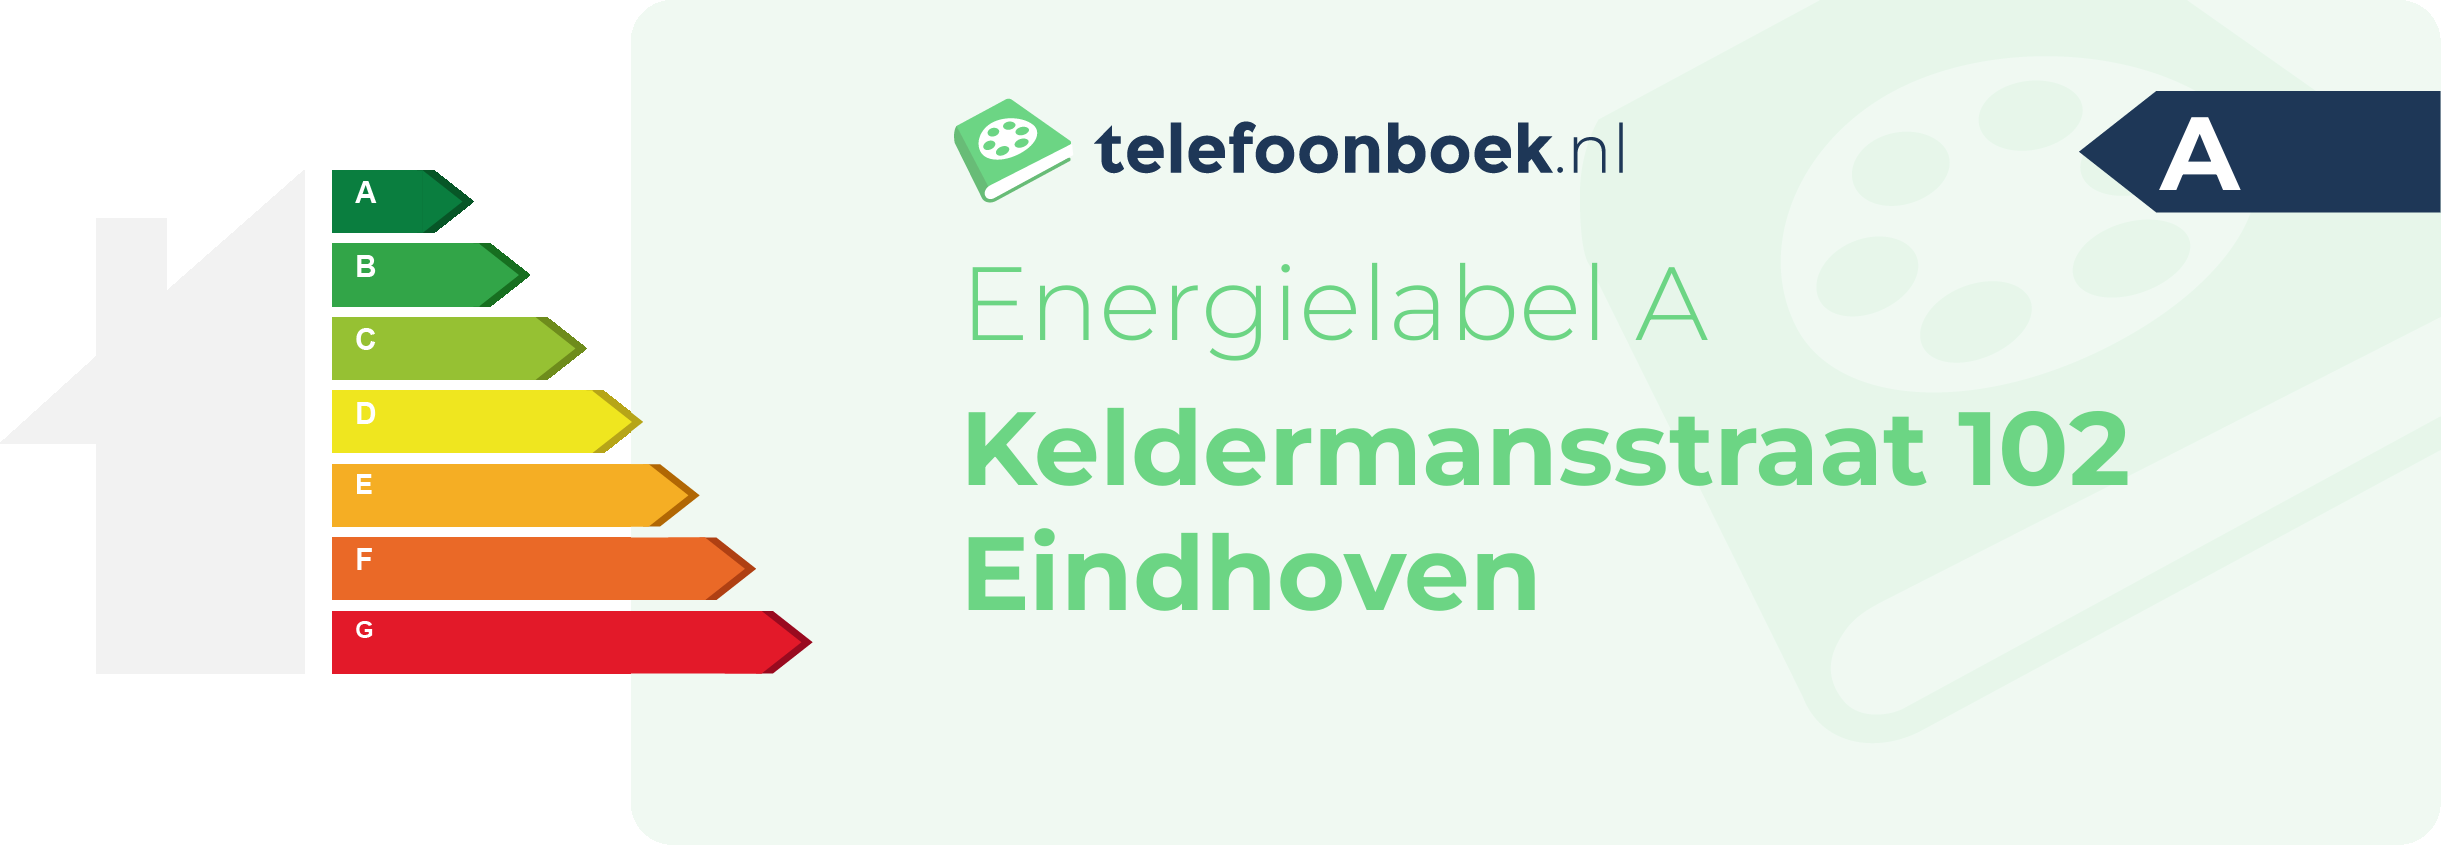 Energielabel Keldermansstraat 102 Eindhoven